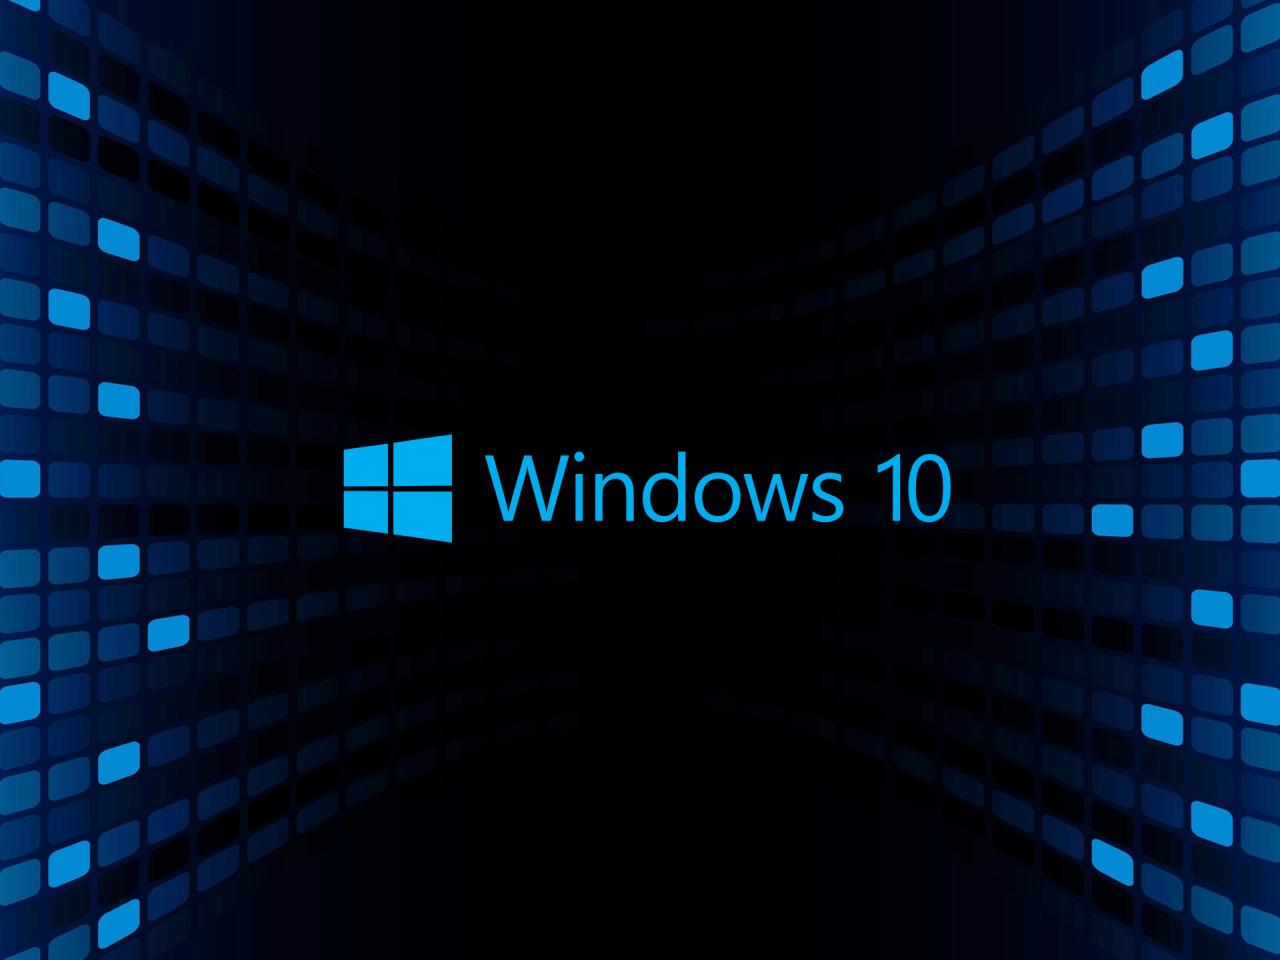 windows 10 wallpaper hd 3d für desktop,blau,text,schriftart,technologie,elektrisches blau